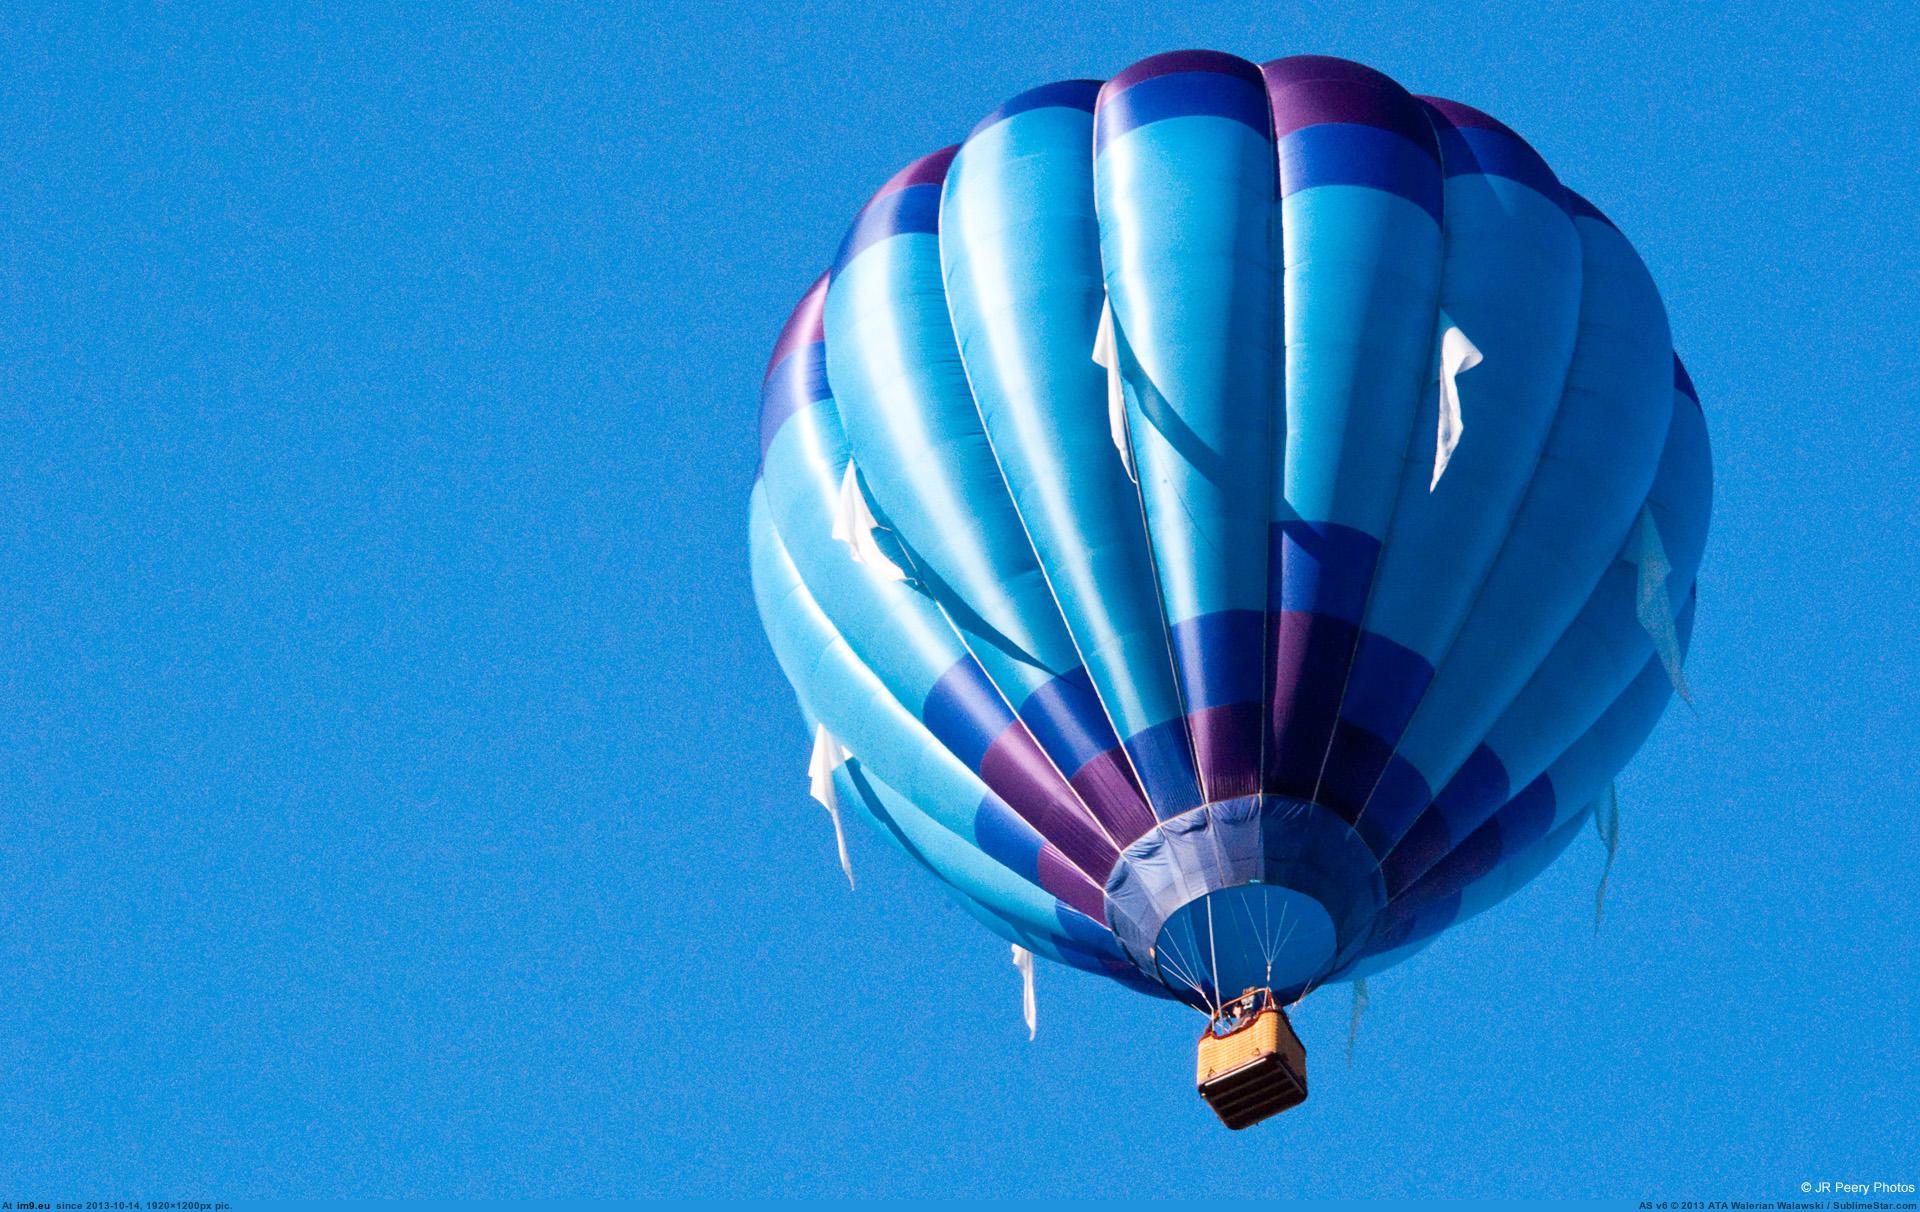 Включи воздушных шариков. Воздушный шар. Воздушный шар с корзиной. Голубой воздушный шар. Воздушный шар в голубом небе.